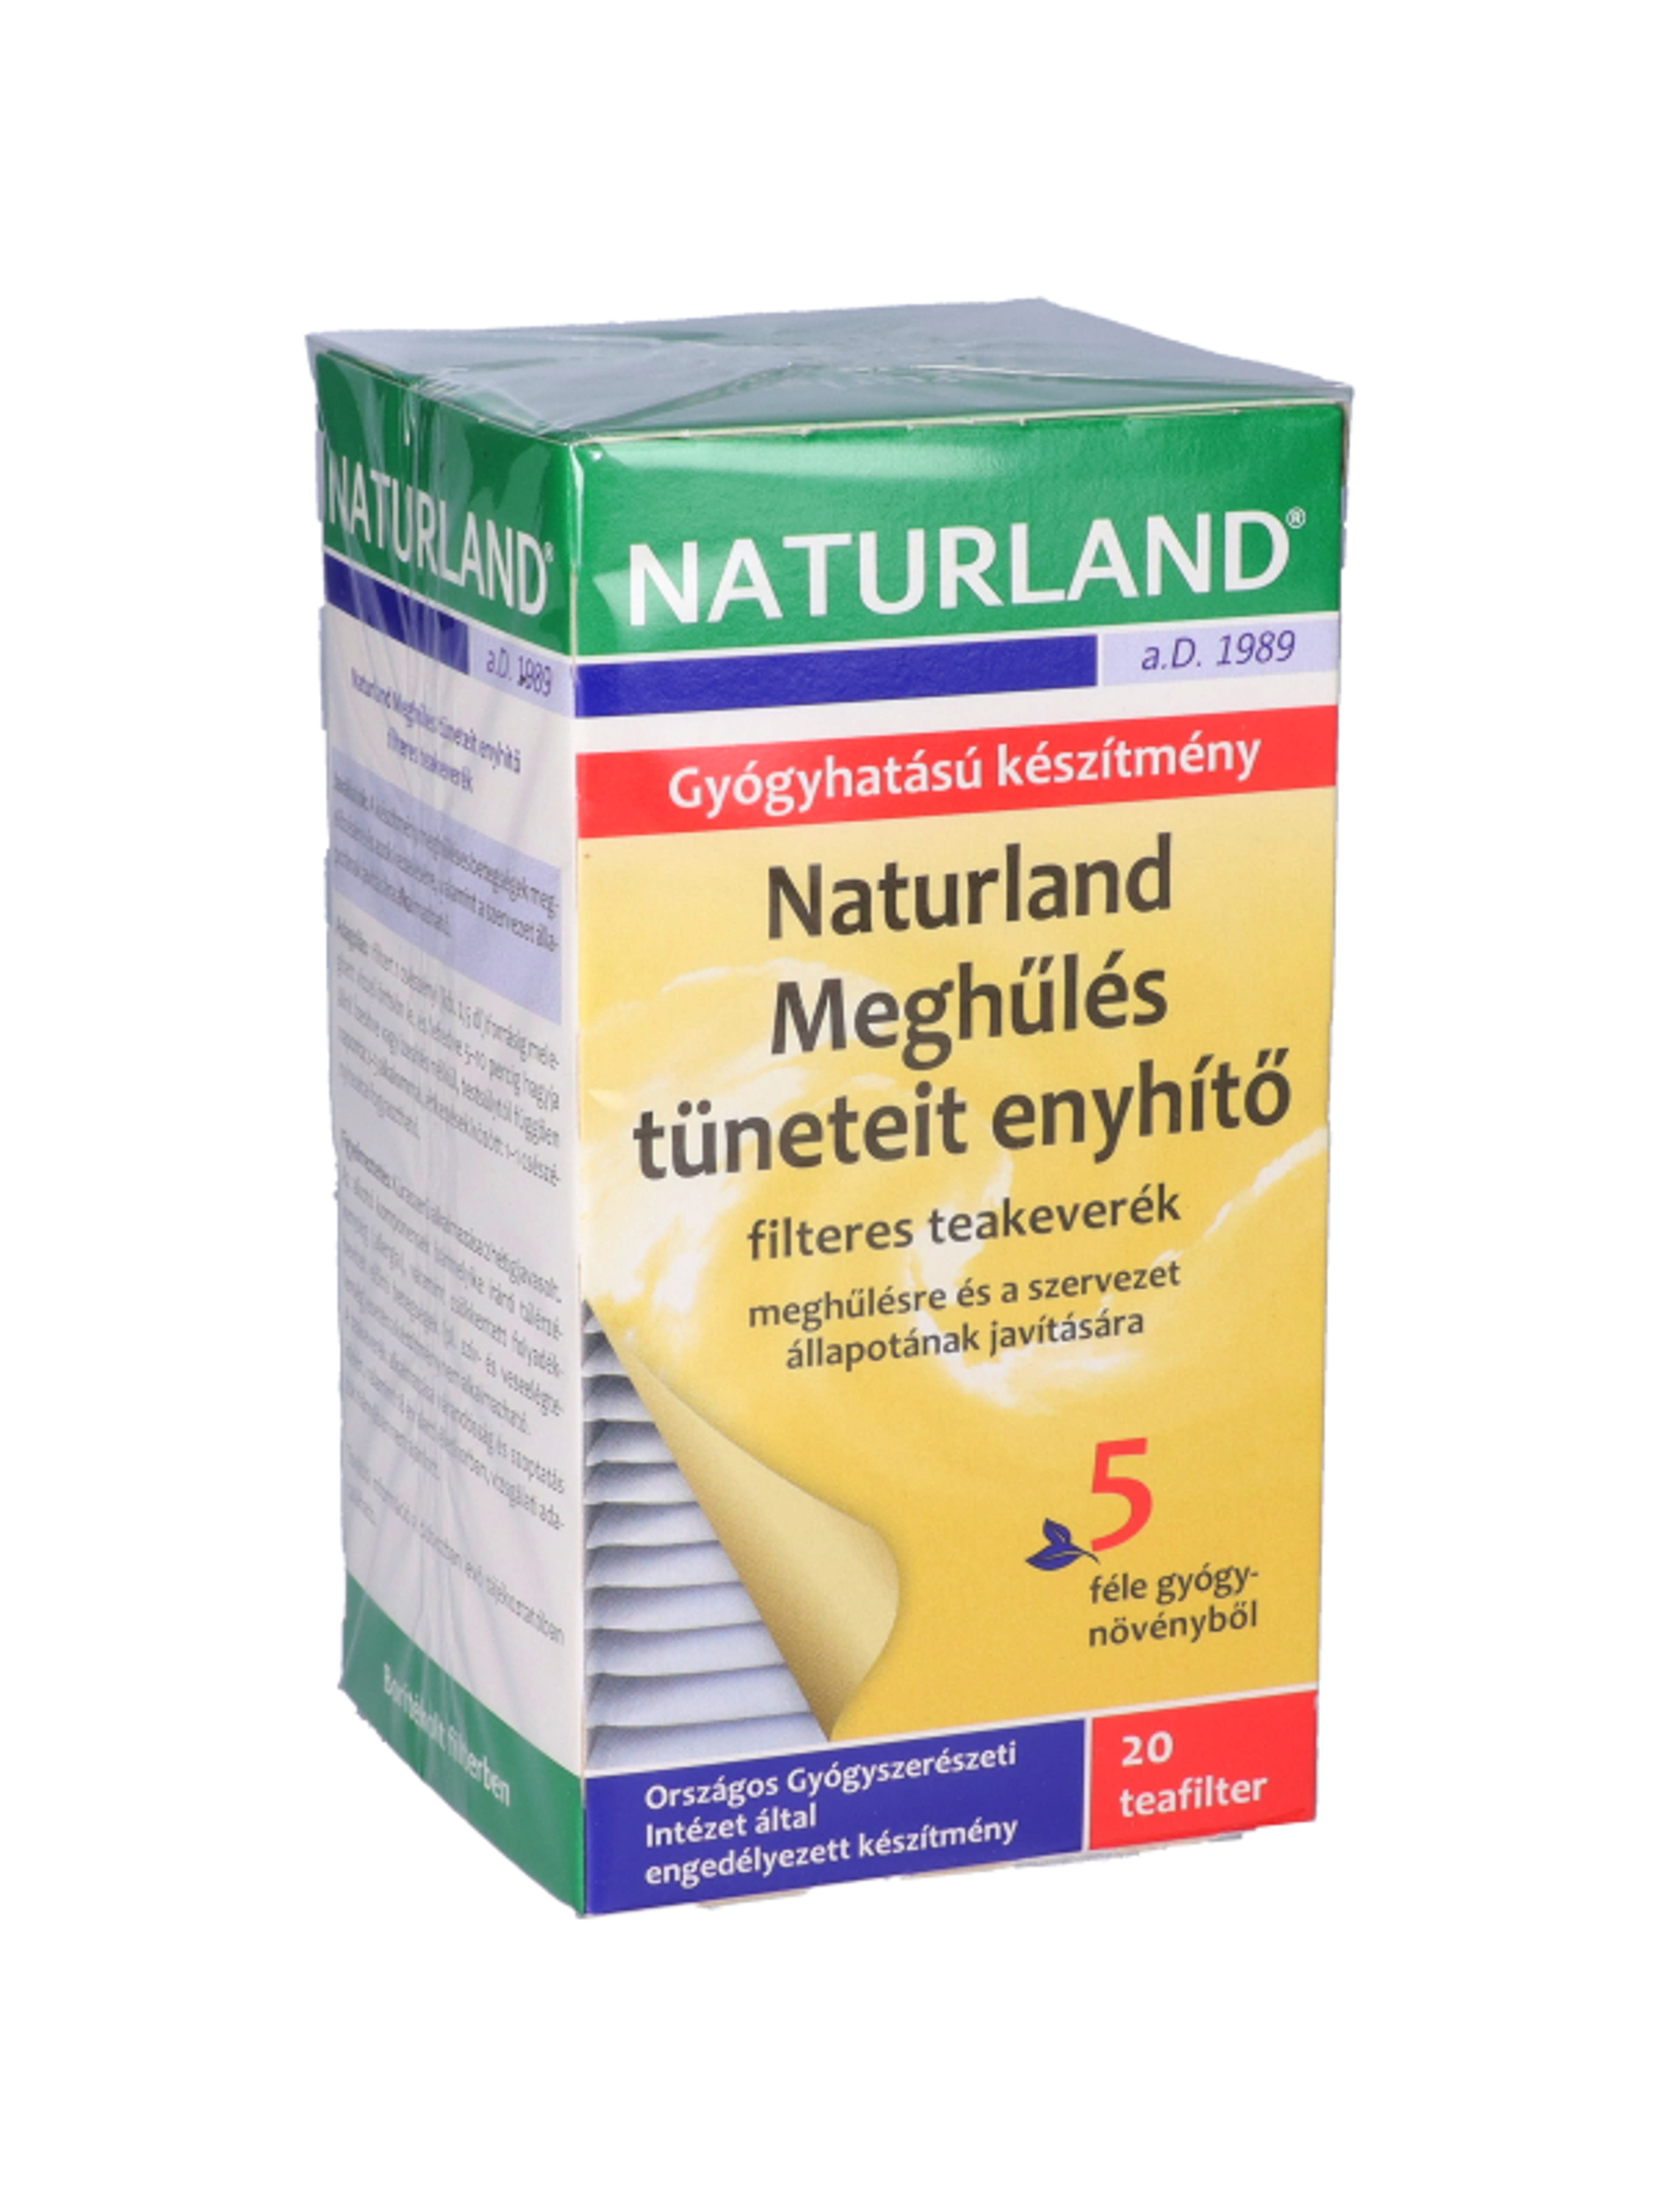 Naturland meghülés tüneteit enyhítő tea 36 g - 20 db